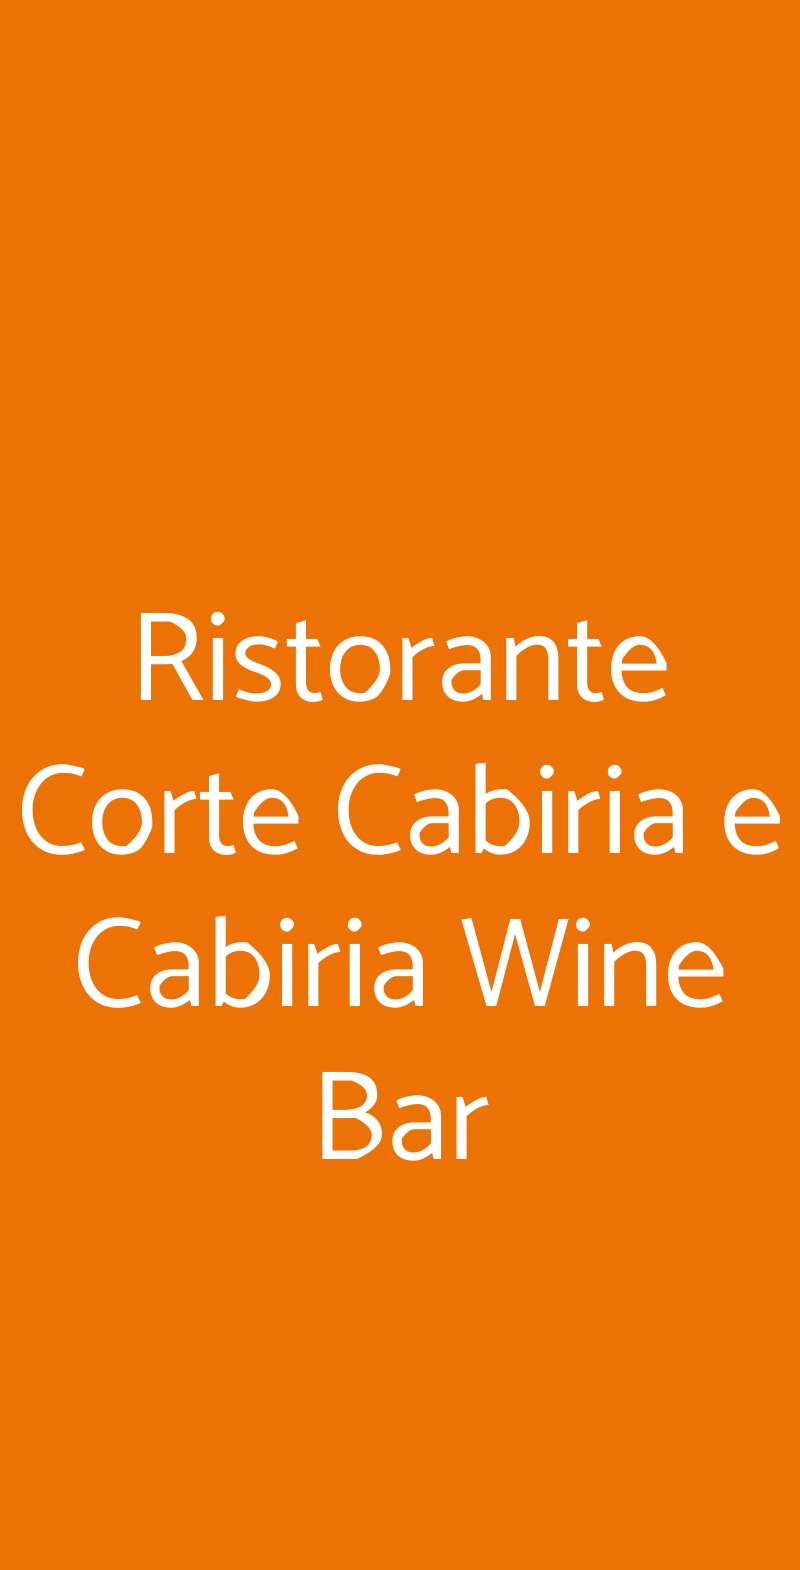 Ristorante Corte Cabiria e Cabiria Wine Bar Ravenna menù 1 pagina